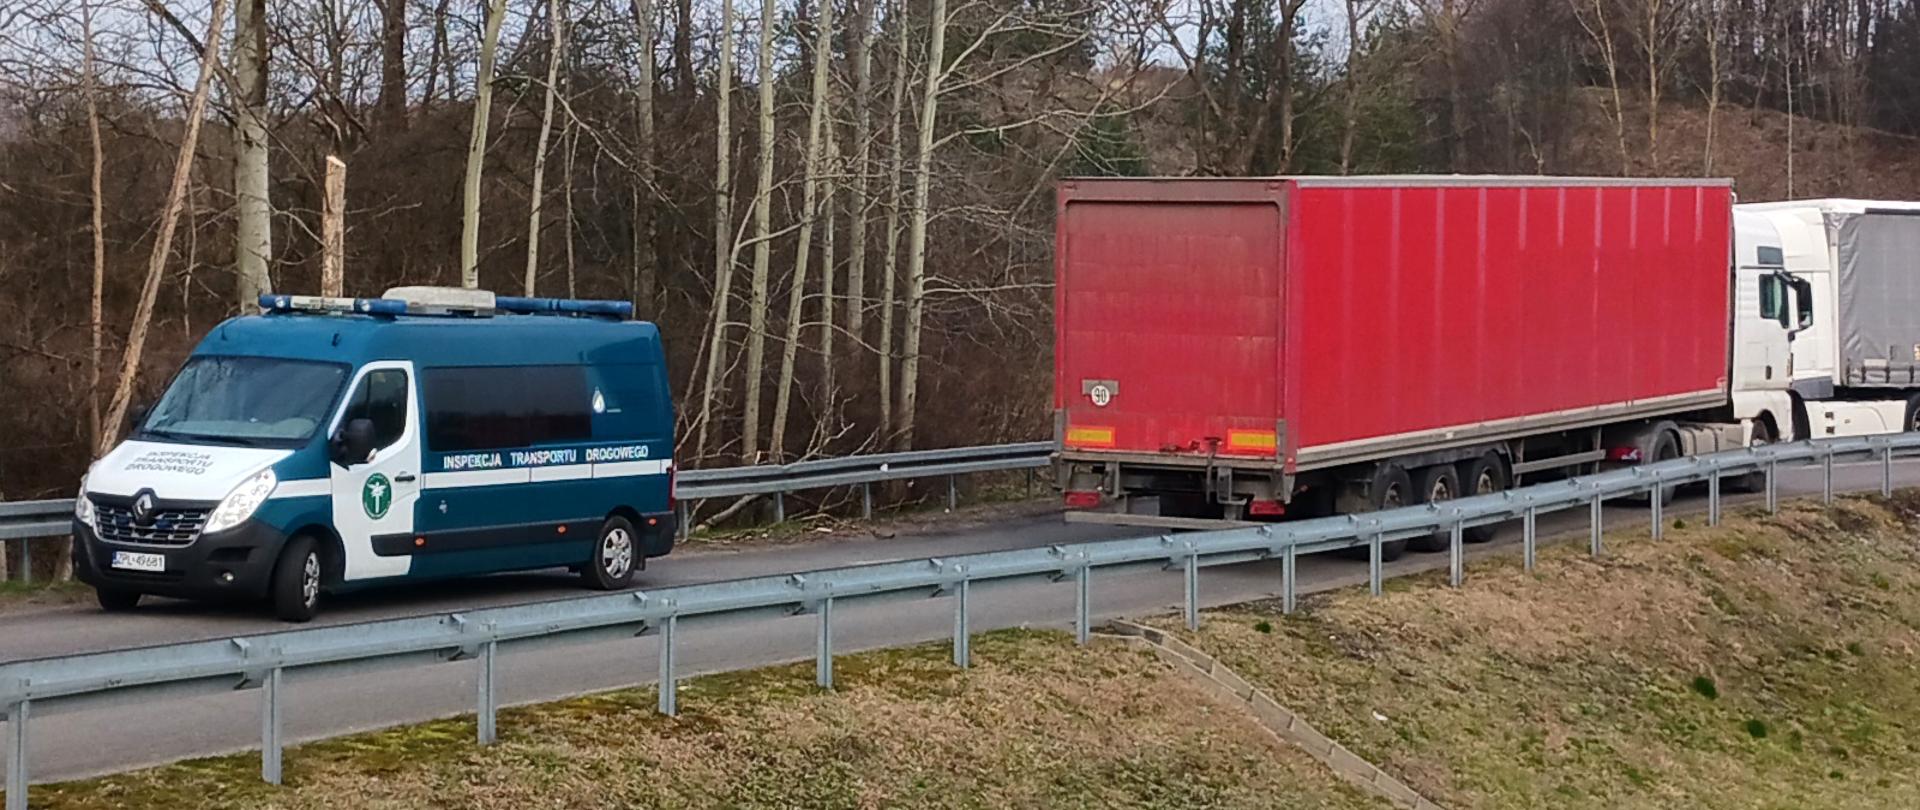 Kontrola inspektorów zachodniopomorskiej Inspekcji Transportu Drogowego. Po lewej inspekcyjny furgon, po prawej zatrzymana ciężarówka.